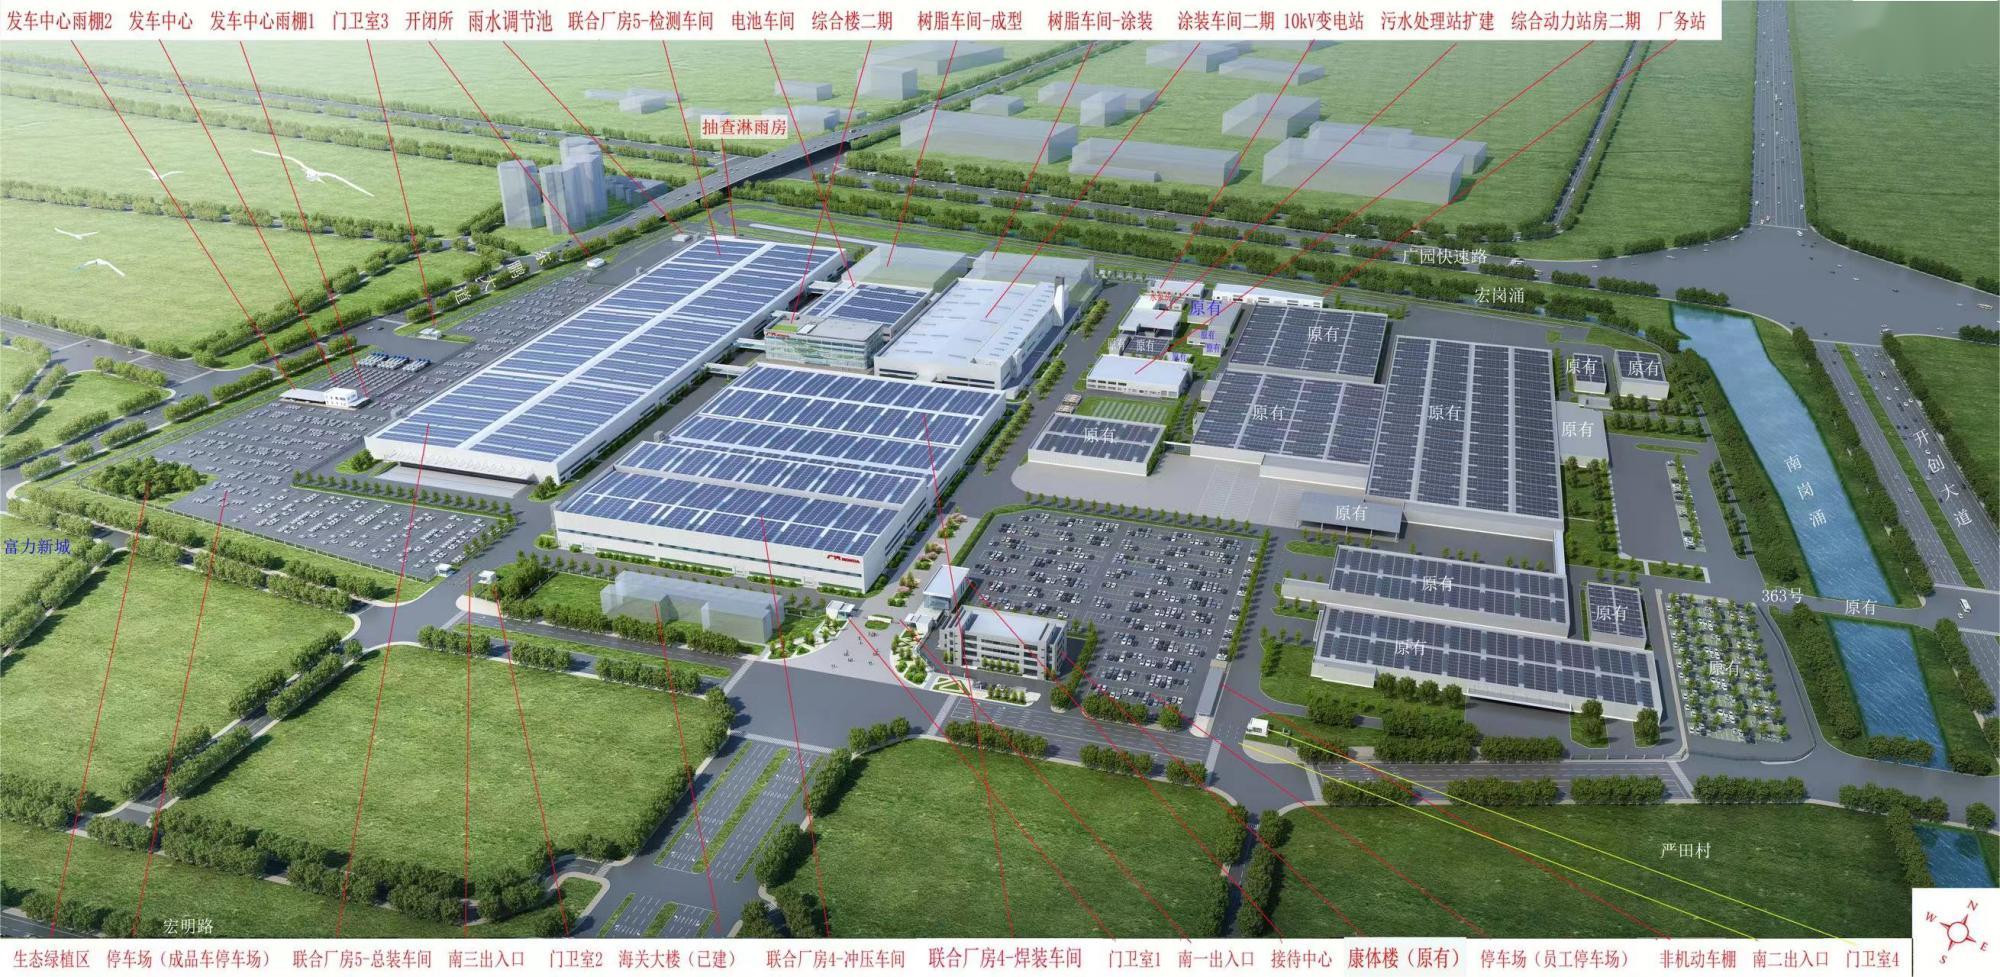 广汽本田新能源车（年产12万辆）产能扩大建设项目检测车间、电池车间、综合楼（二期）、公用工程及配套工程